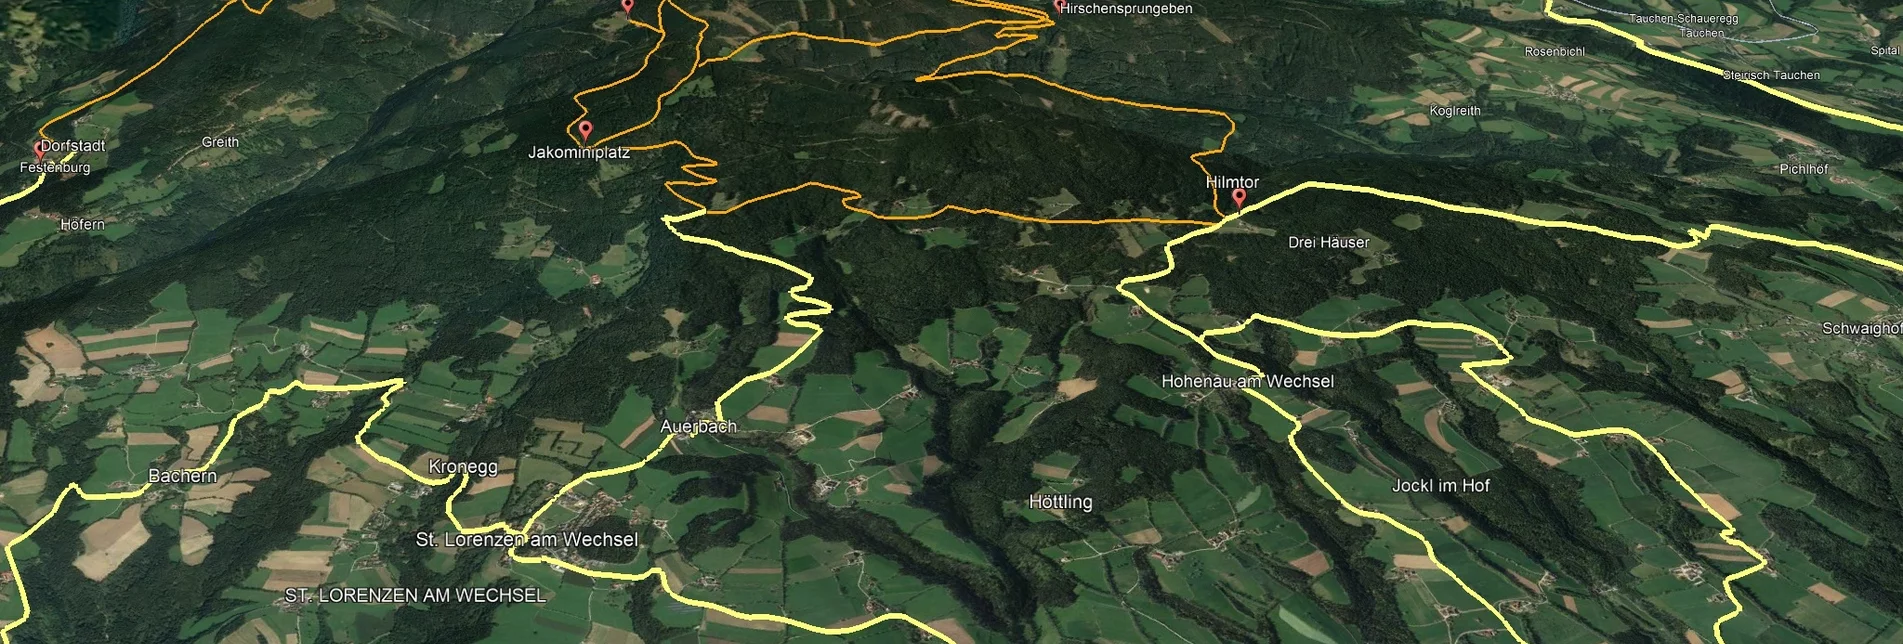 Mountain Biking PREVIEW Styrian Wexl Trails - Studentenkreuz Route - Touren-Impression #1 | © Verein Tourismusentwicklung Steirischer Wechsel